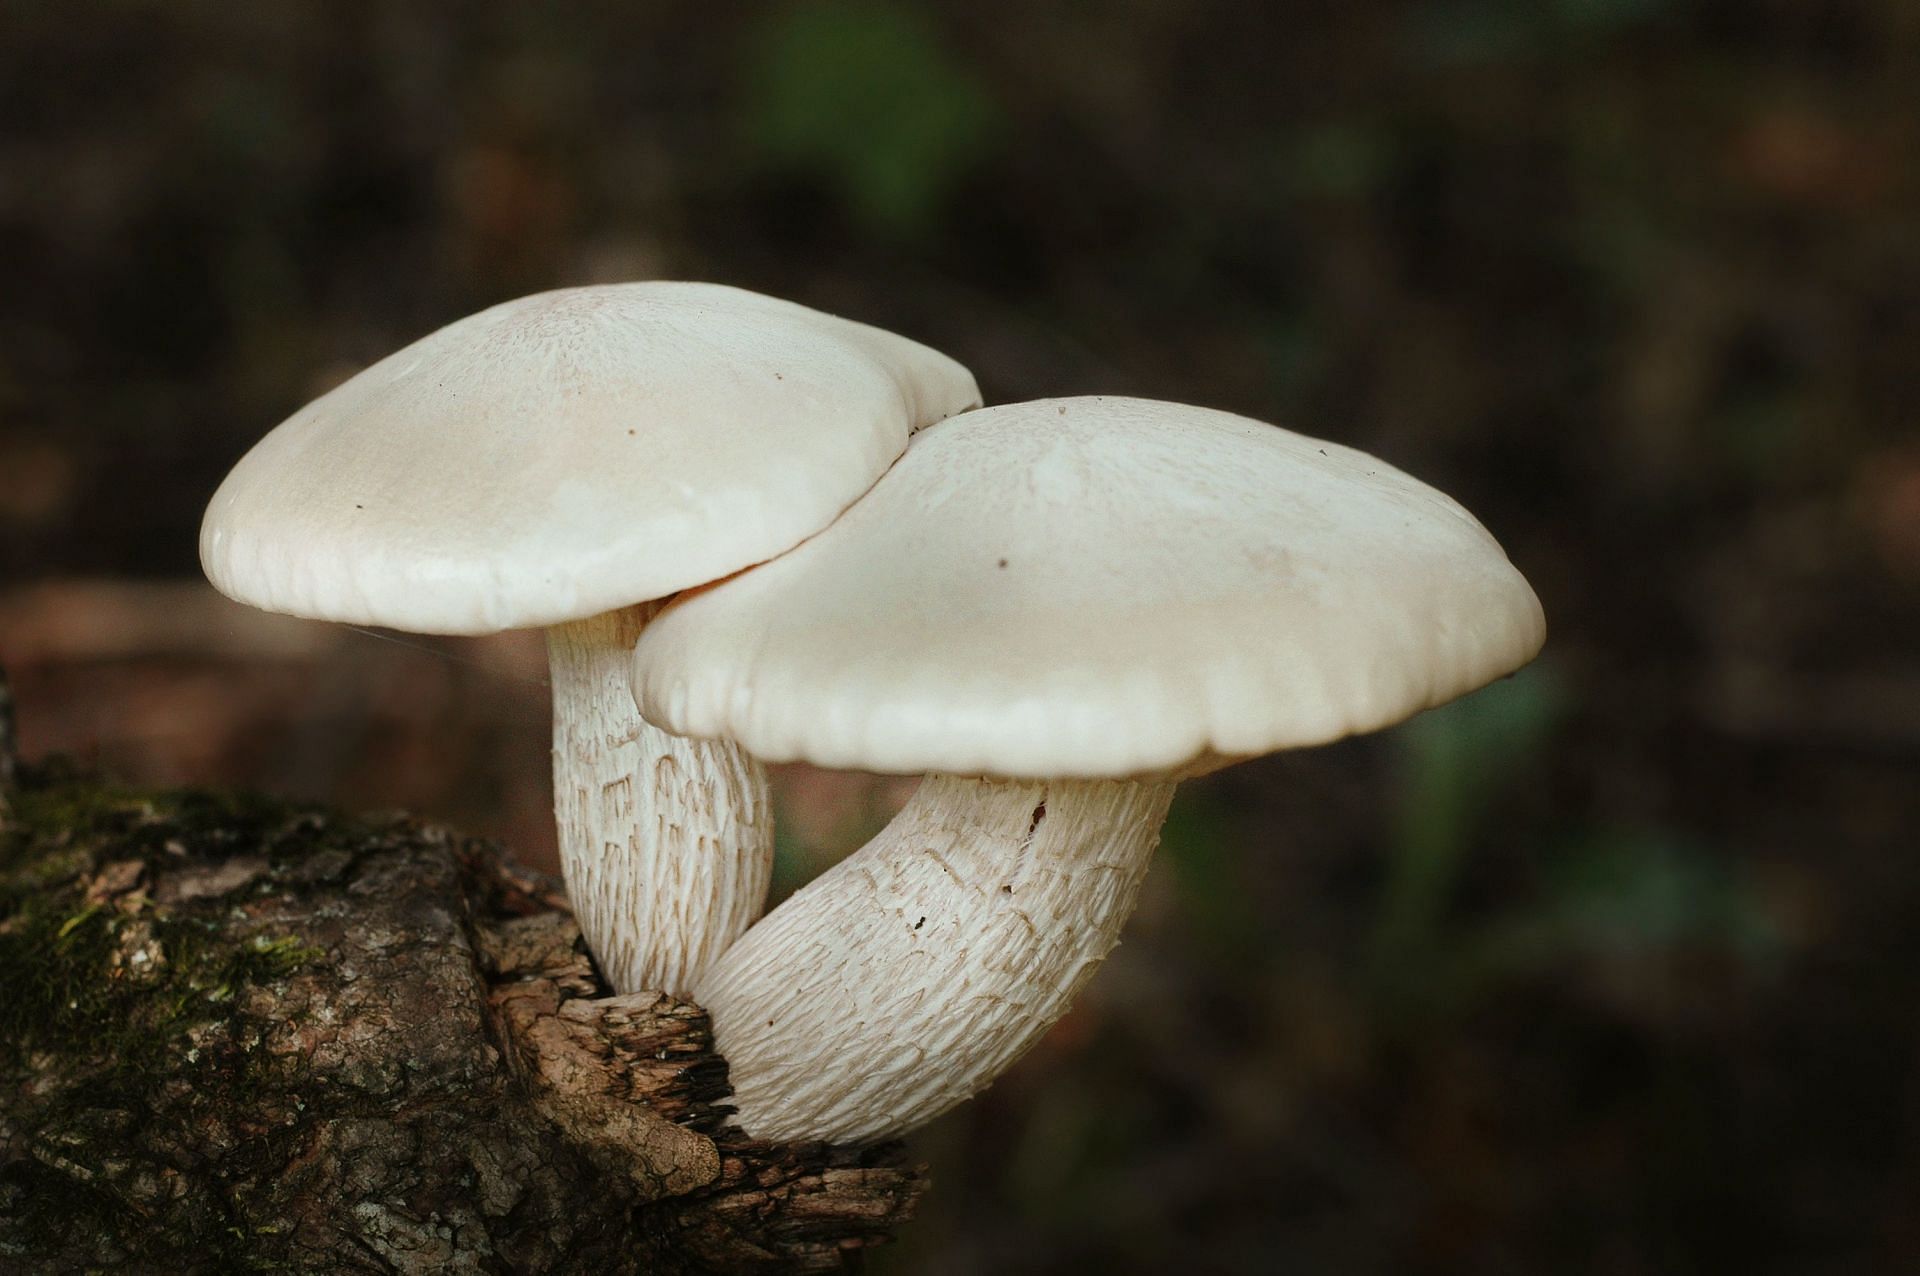 Types of mushrooms (Image via Unsplash/Jen Theodore)